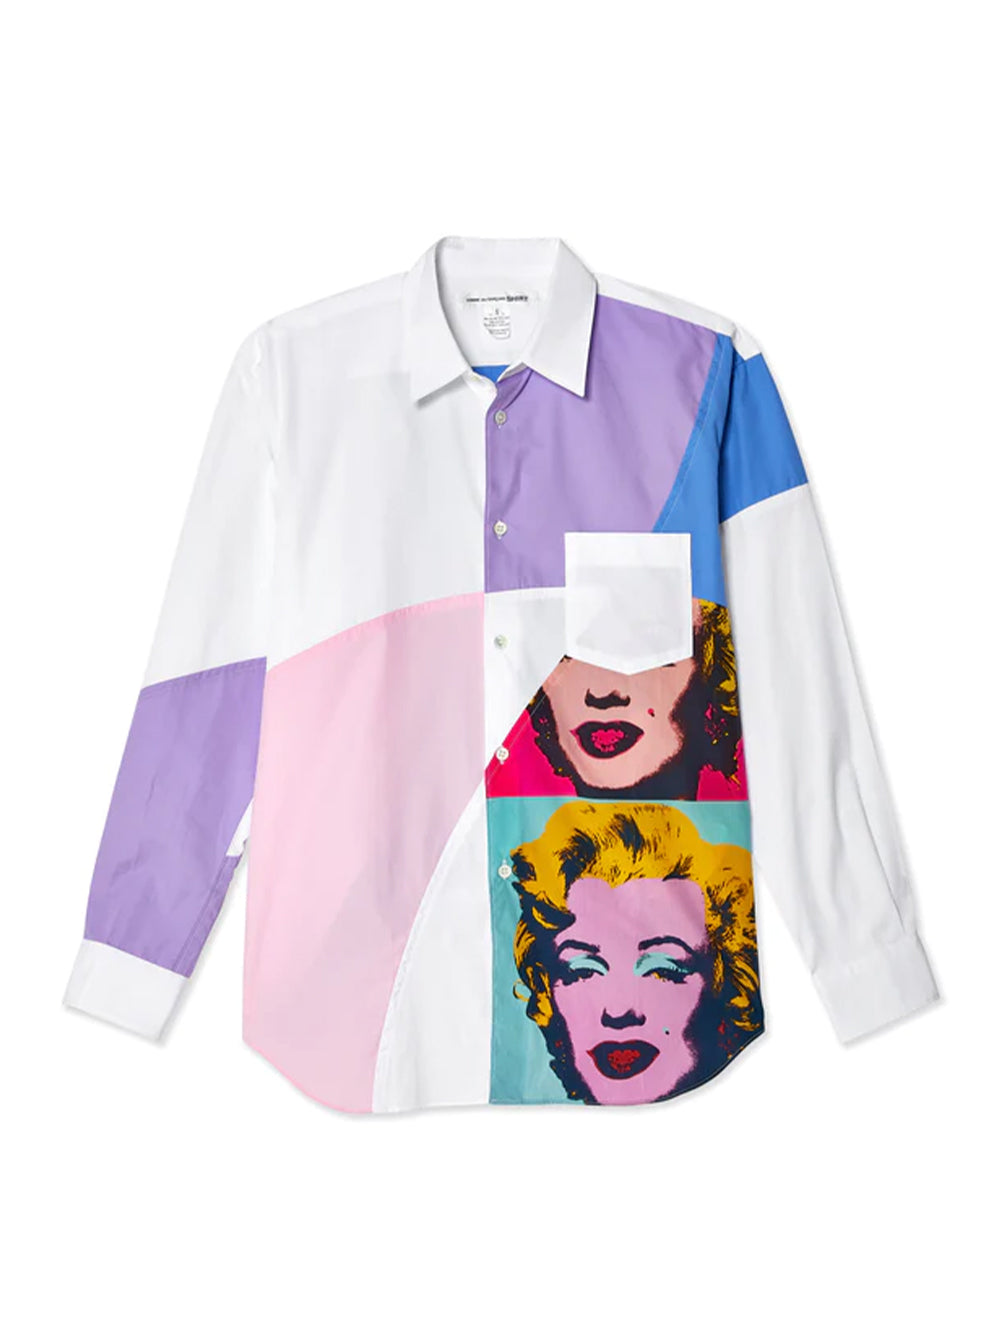 Andy Warhol Men's Cotton Stripe Shirt (Print L-2)